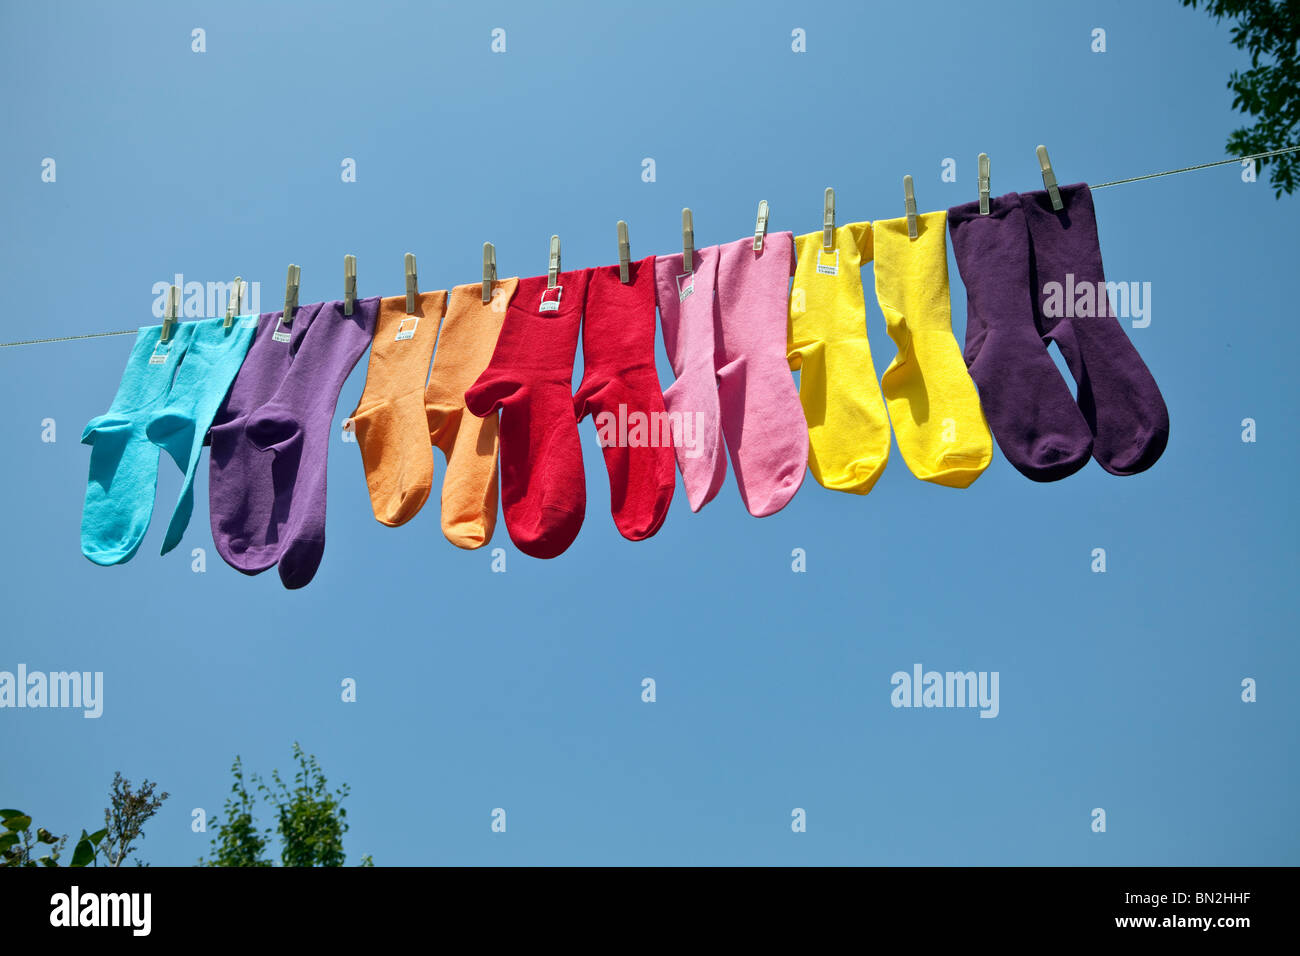 Pantone coloré chaussettes sur un lave-ligne Photo Stock - Alamy